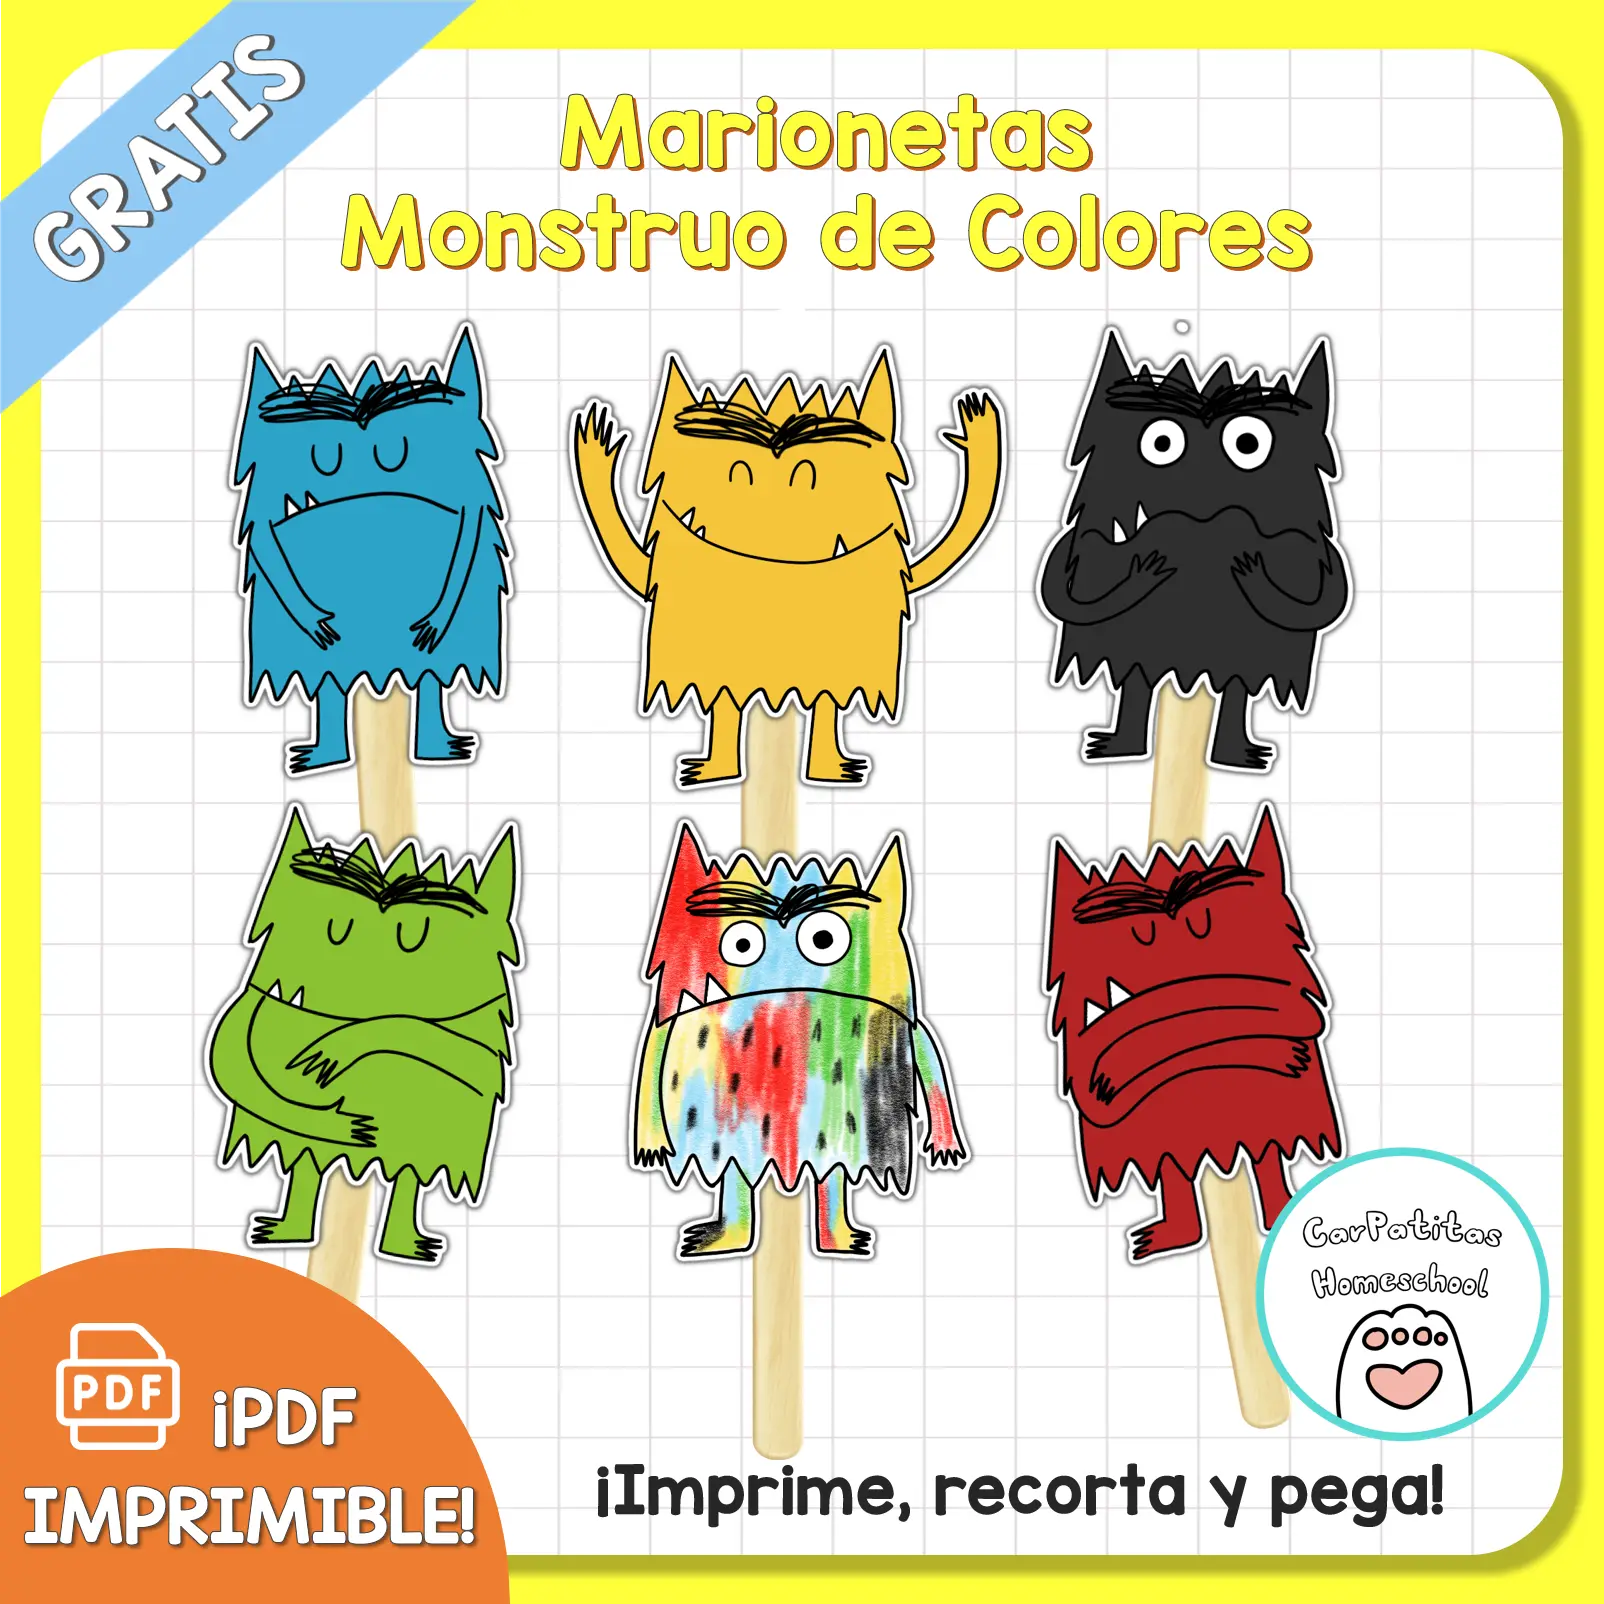 PDF Gratis: Marionetas Monstruo de Colores